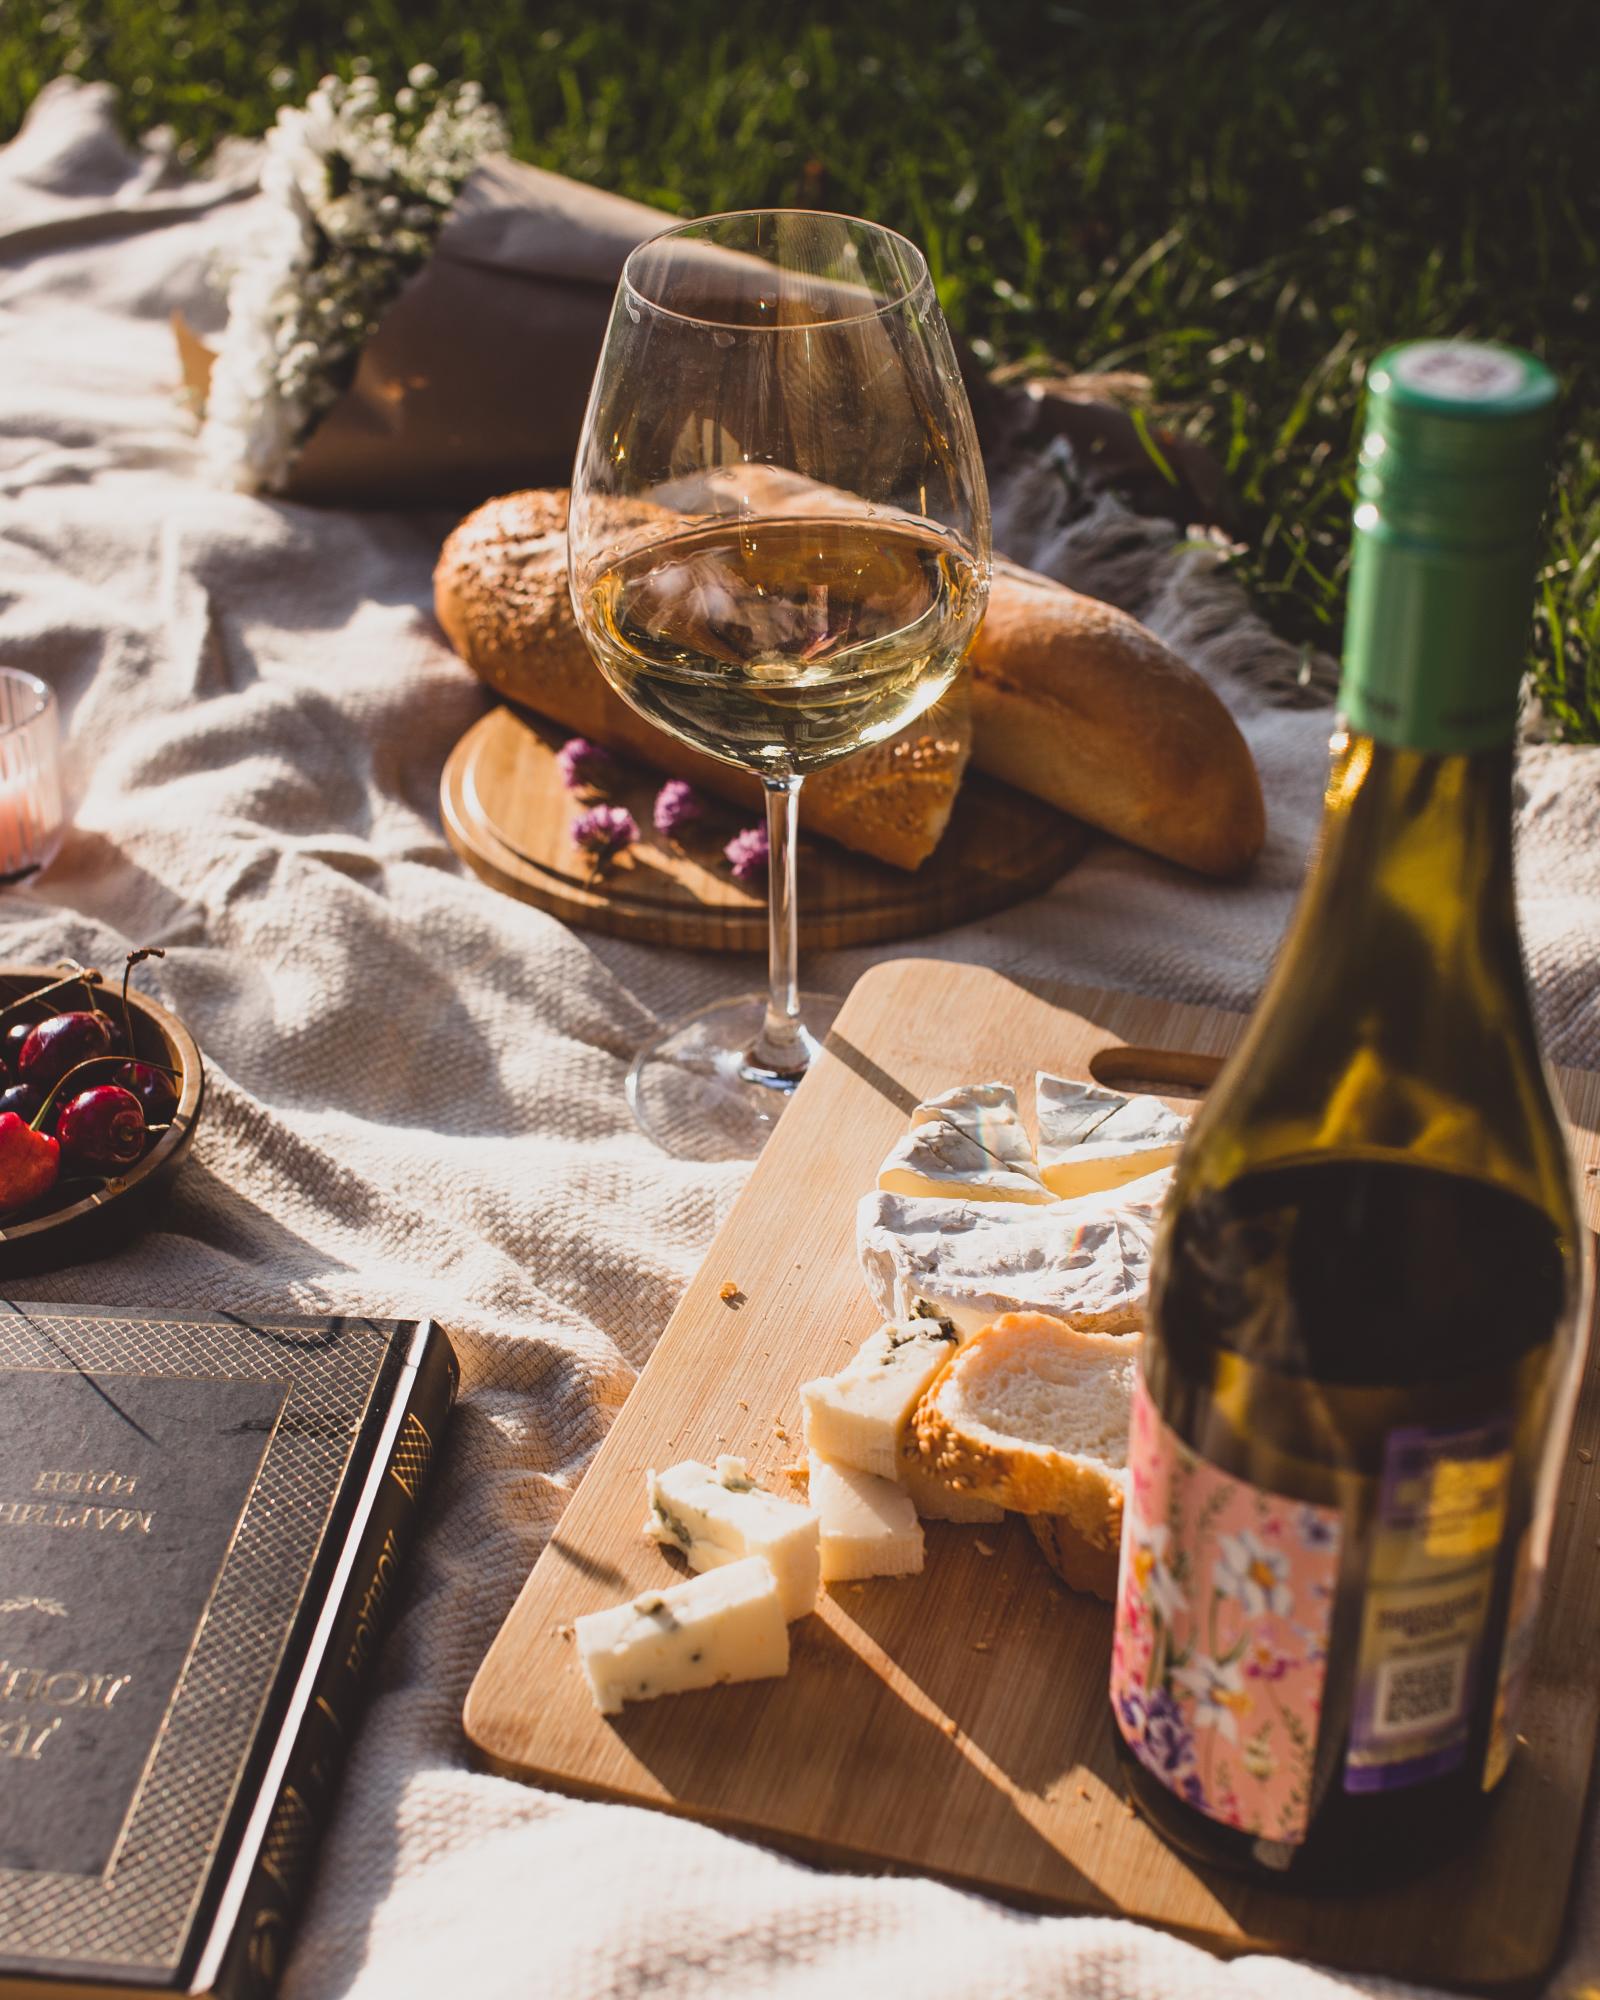 $!La cata de vinos se puede acompañar de otros alimentos como queso o pan.